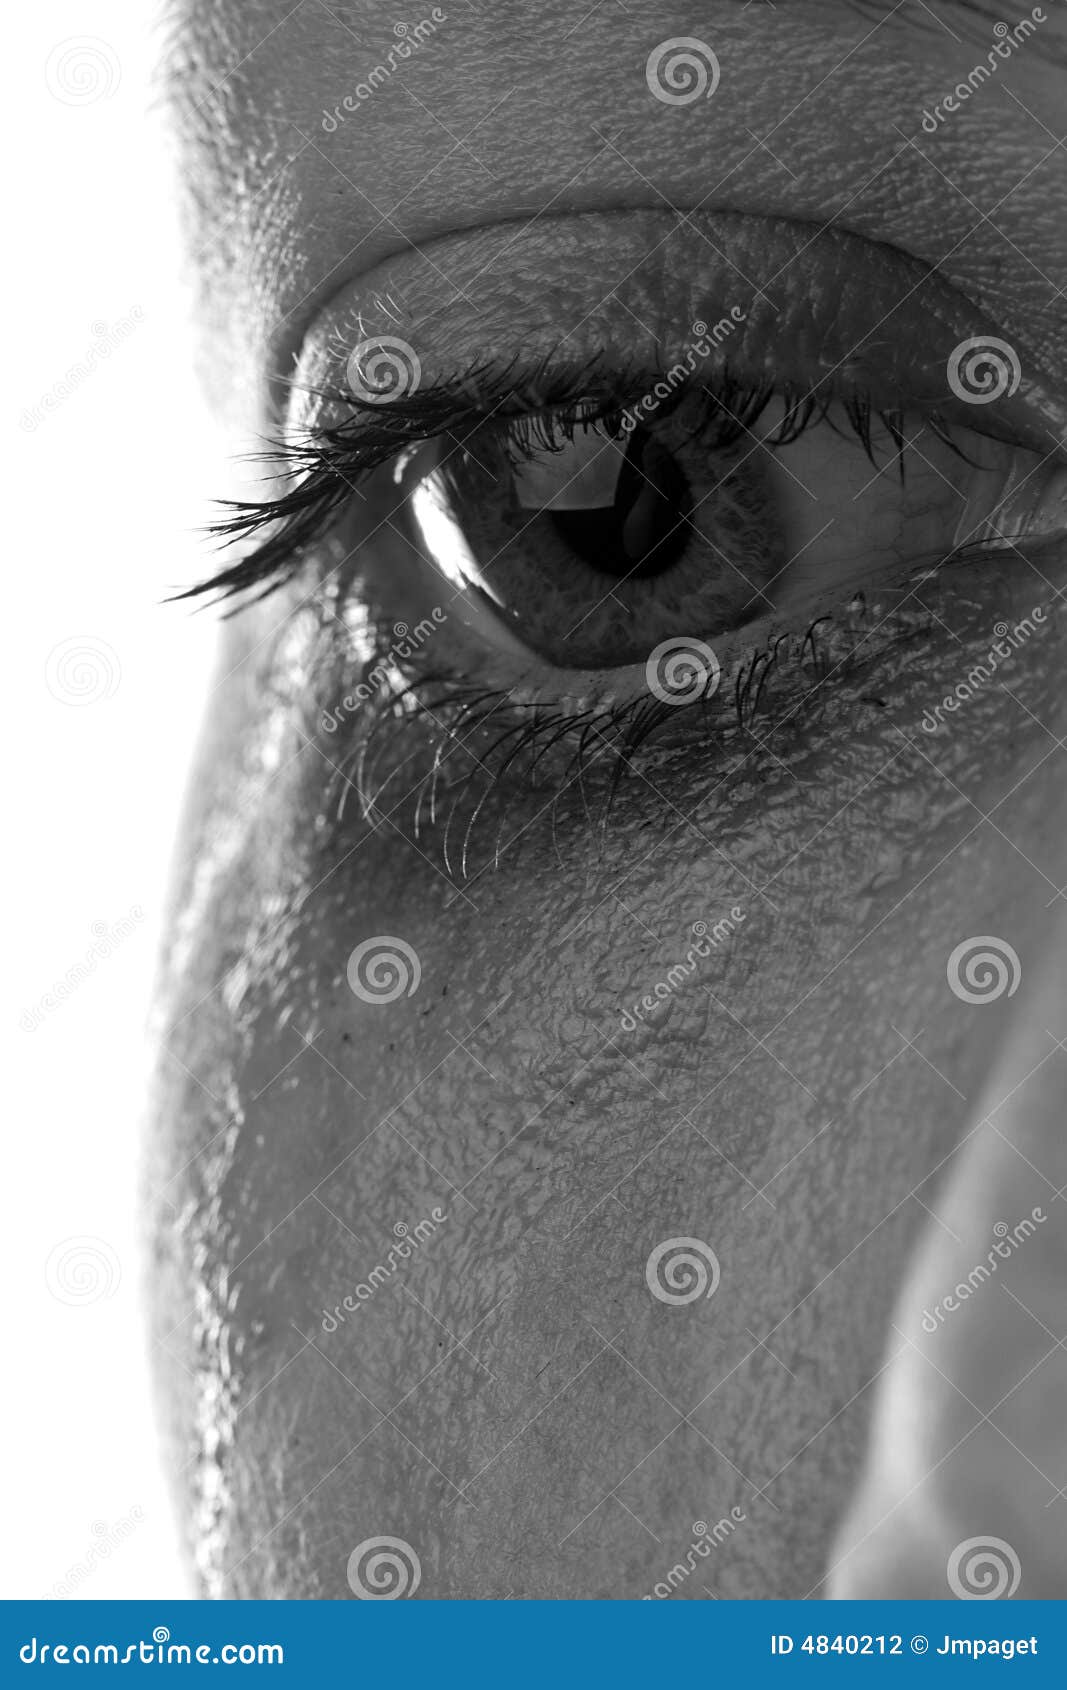 Sad Eye Close Up Black & White Stock Photo - Image of blue ...